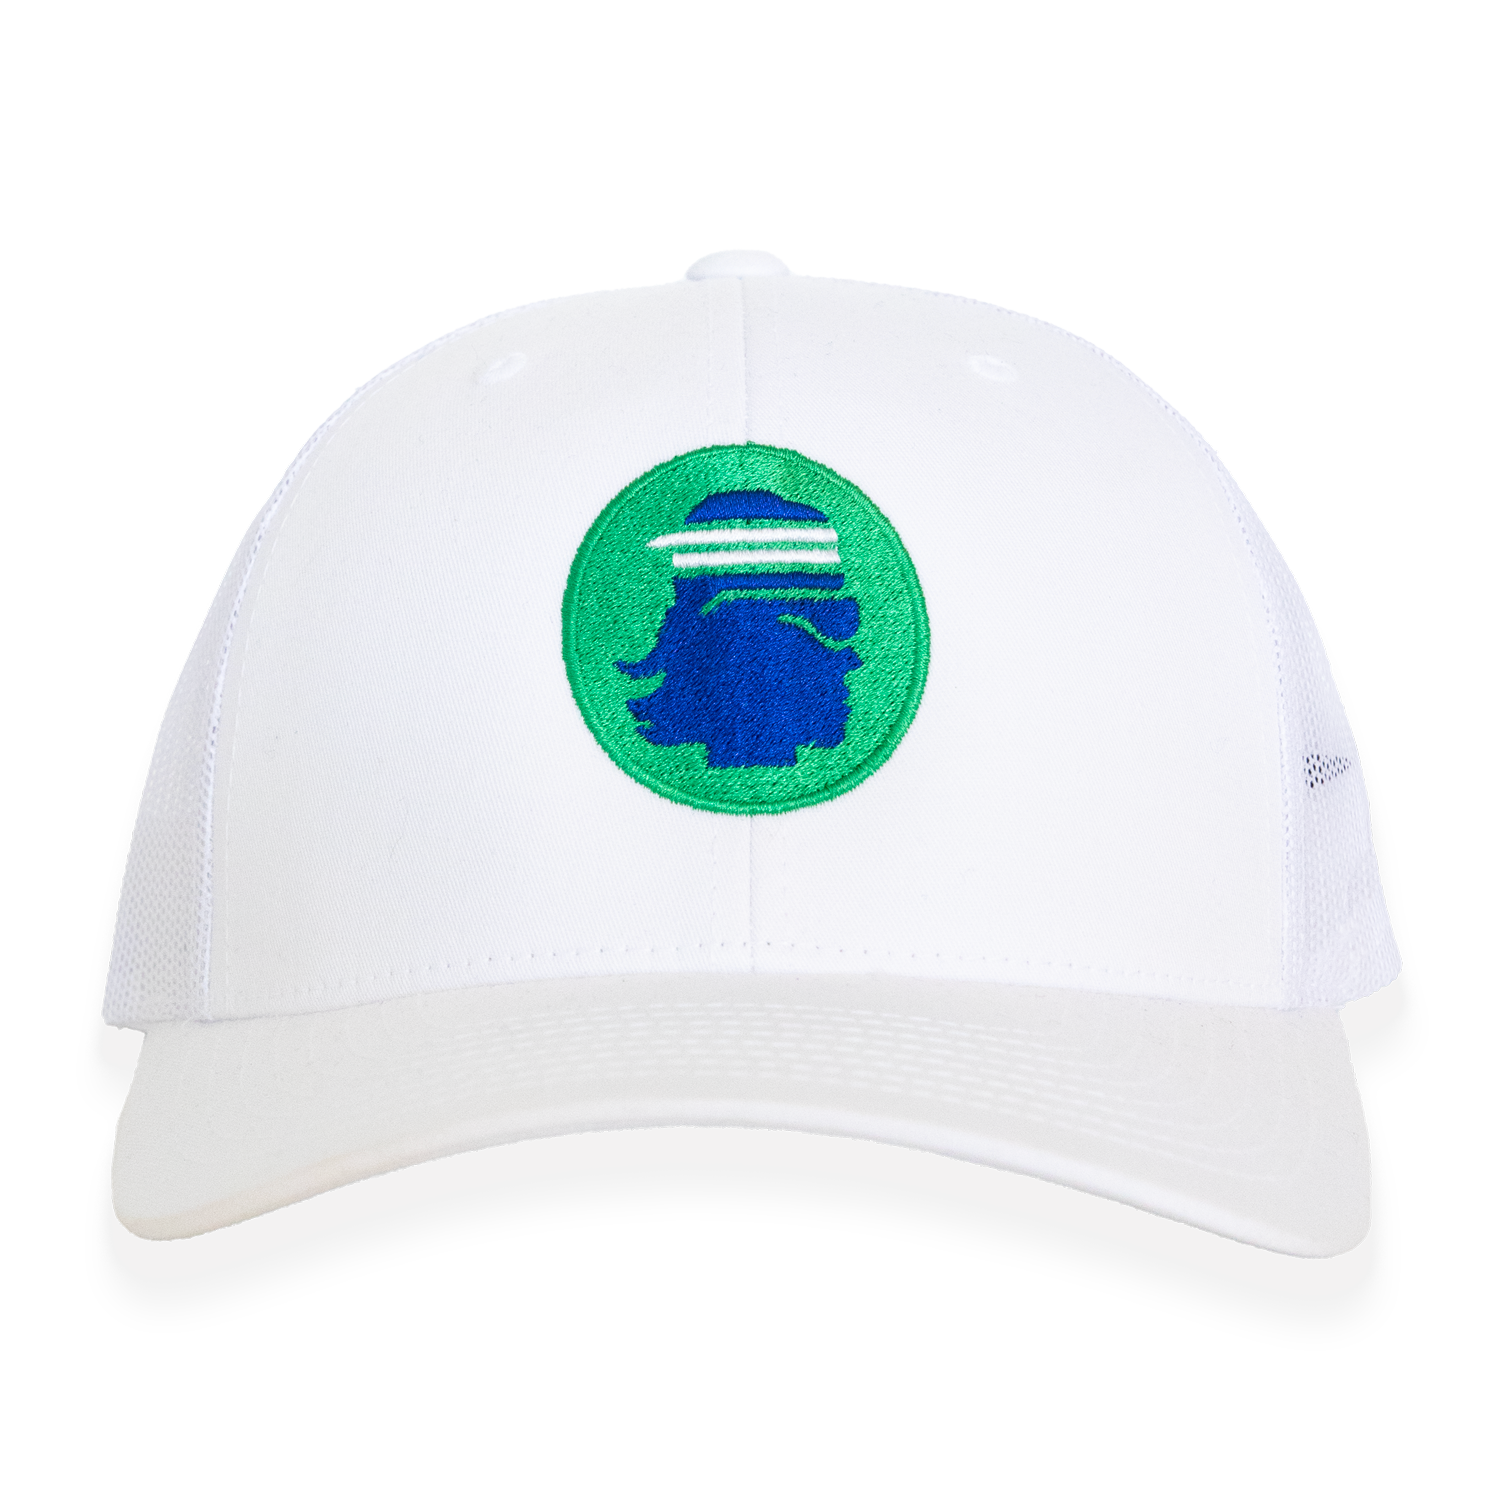 MDPC White Trucker Hat